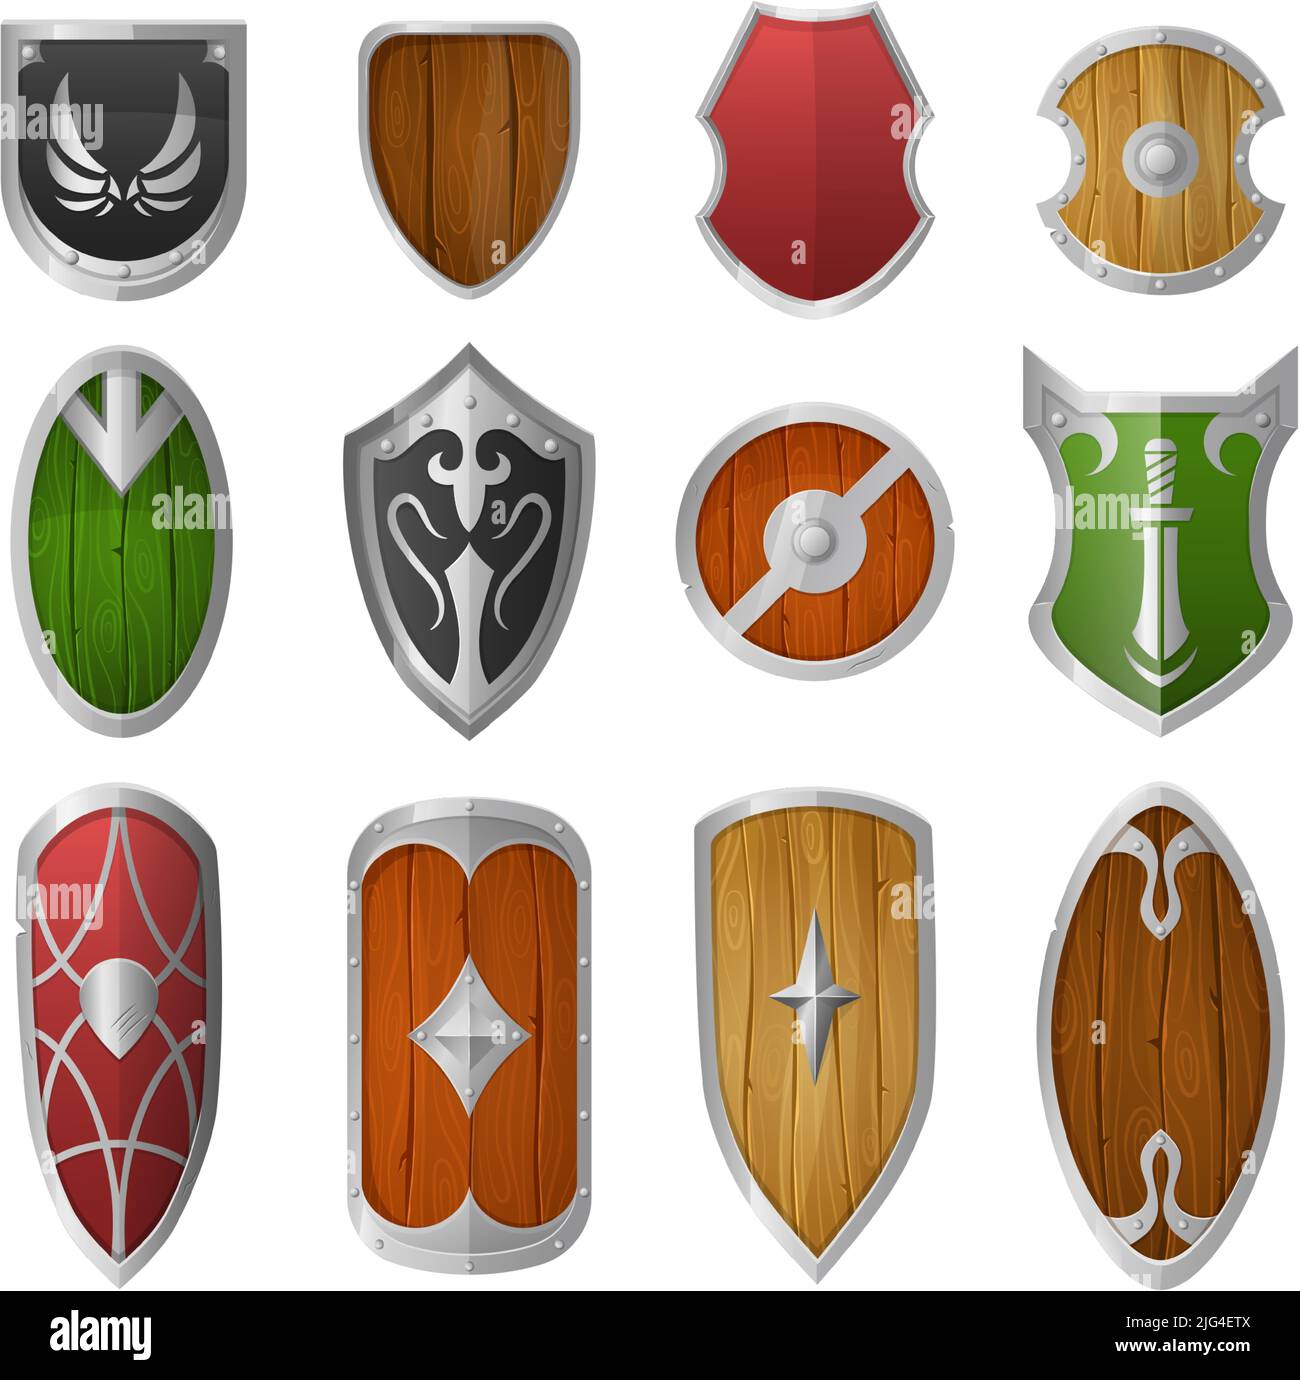 Schermi cartoni animati. Armatura in legno e metallo, difesa militare medievale cavaliere scudo vettore illustrazione set Illustrazione Vettoriale